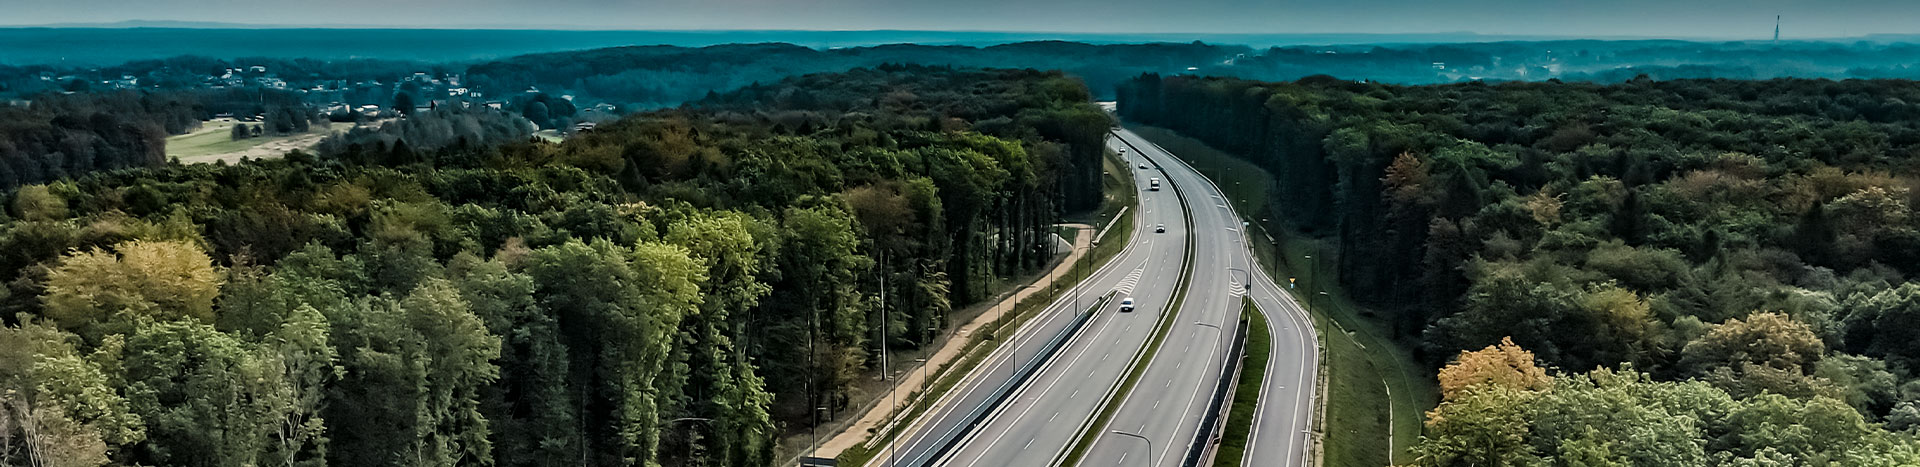 Fotografia przedstawia fragment drogi Racibórz-Pszczyna, przebiegającej przez Rybnik. Widać nową trasę z dwoma pasami w obie strony oraz wjazdy i zjazdy. Dookoła rosną drzewa. Widoczna jest również panorama. Autorem zdjęcia jest Macie Motylewski.